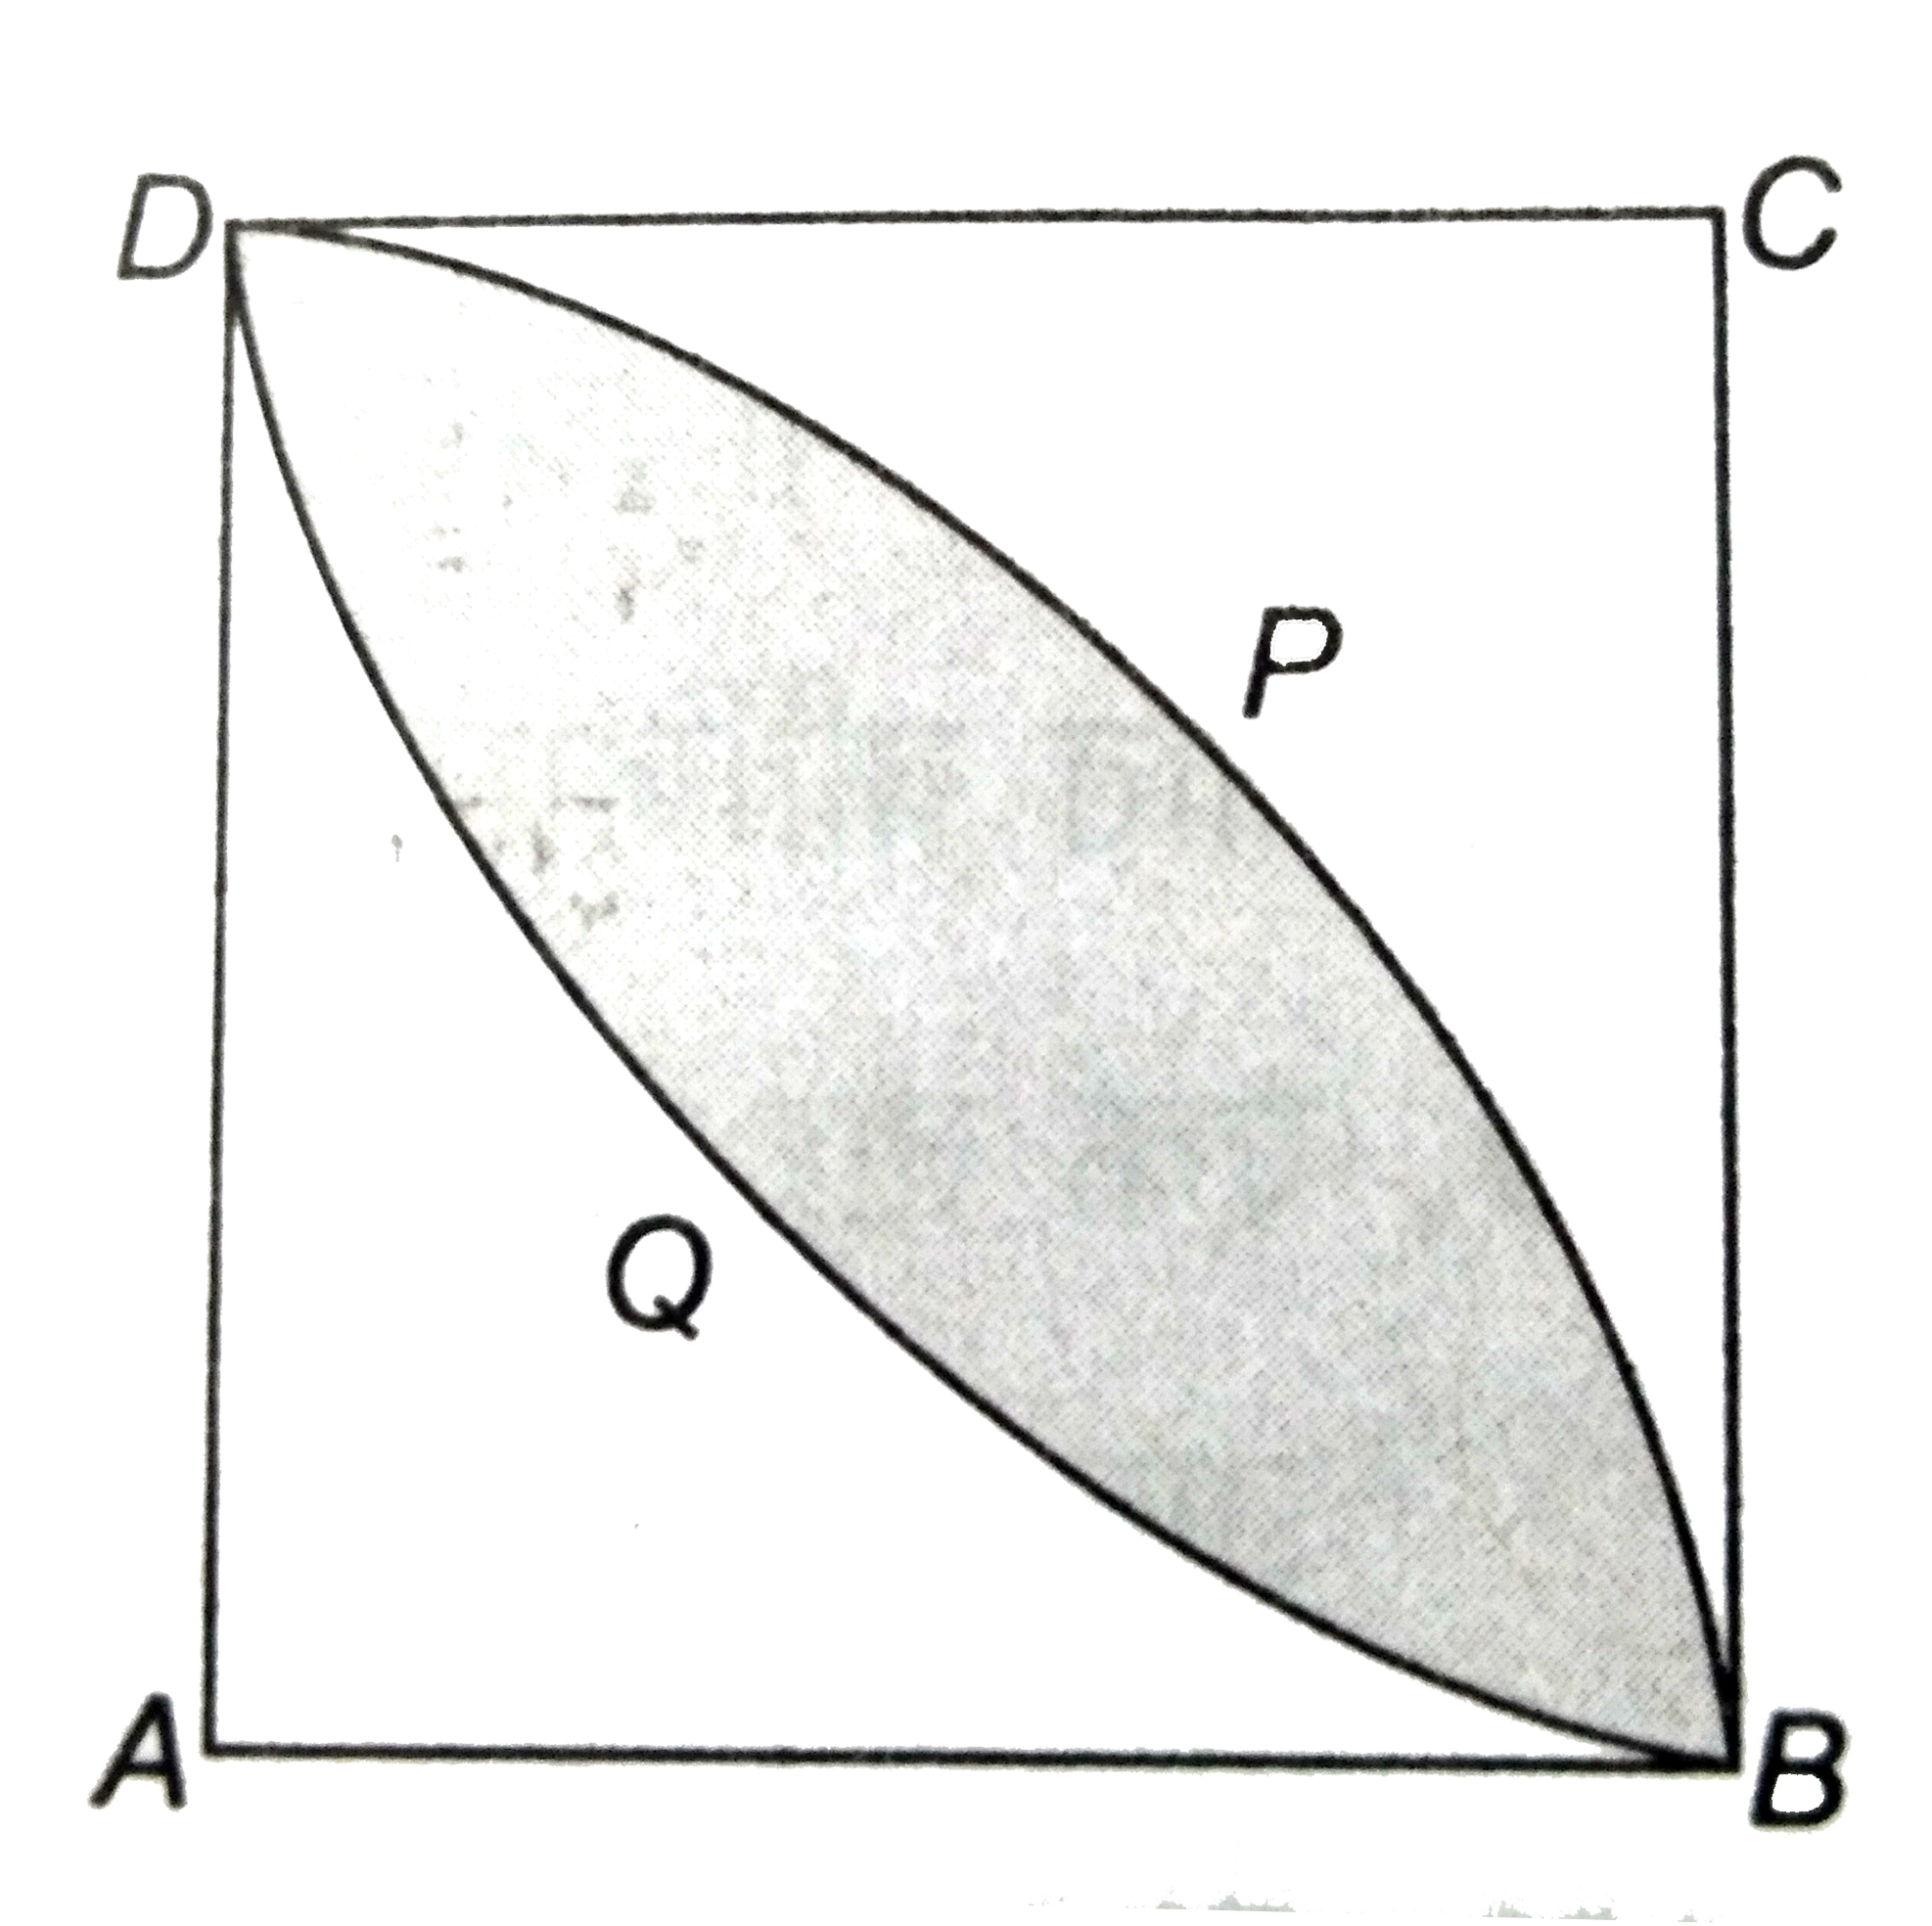 दी आकृति में , ABCD  7  सेमी भुजा का एक वर्ग  है । DPBA  और DQBC  प्रत्येक  7  सेमी त्रिज्या  के वृत्त के चतुर्थांश   है । छायांकित  भाग  का क्षेत्रफल  ज्ञात कीजिए ।